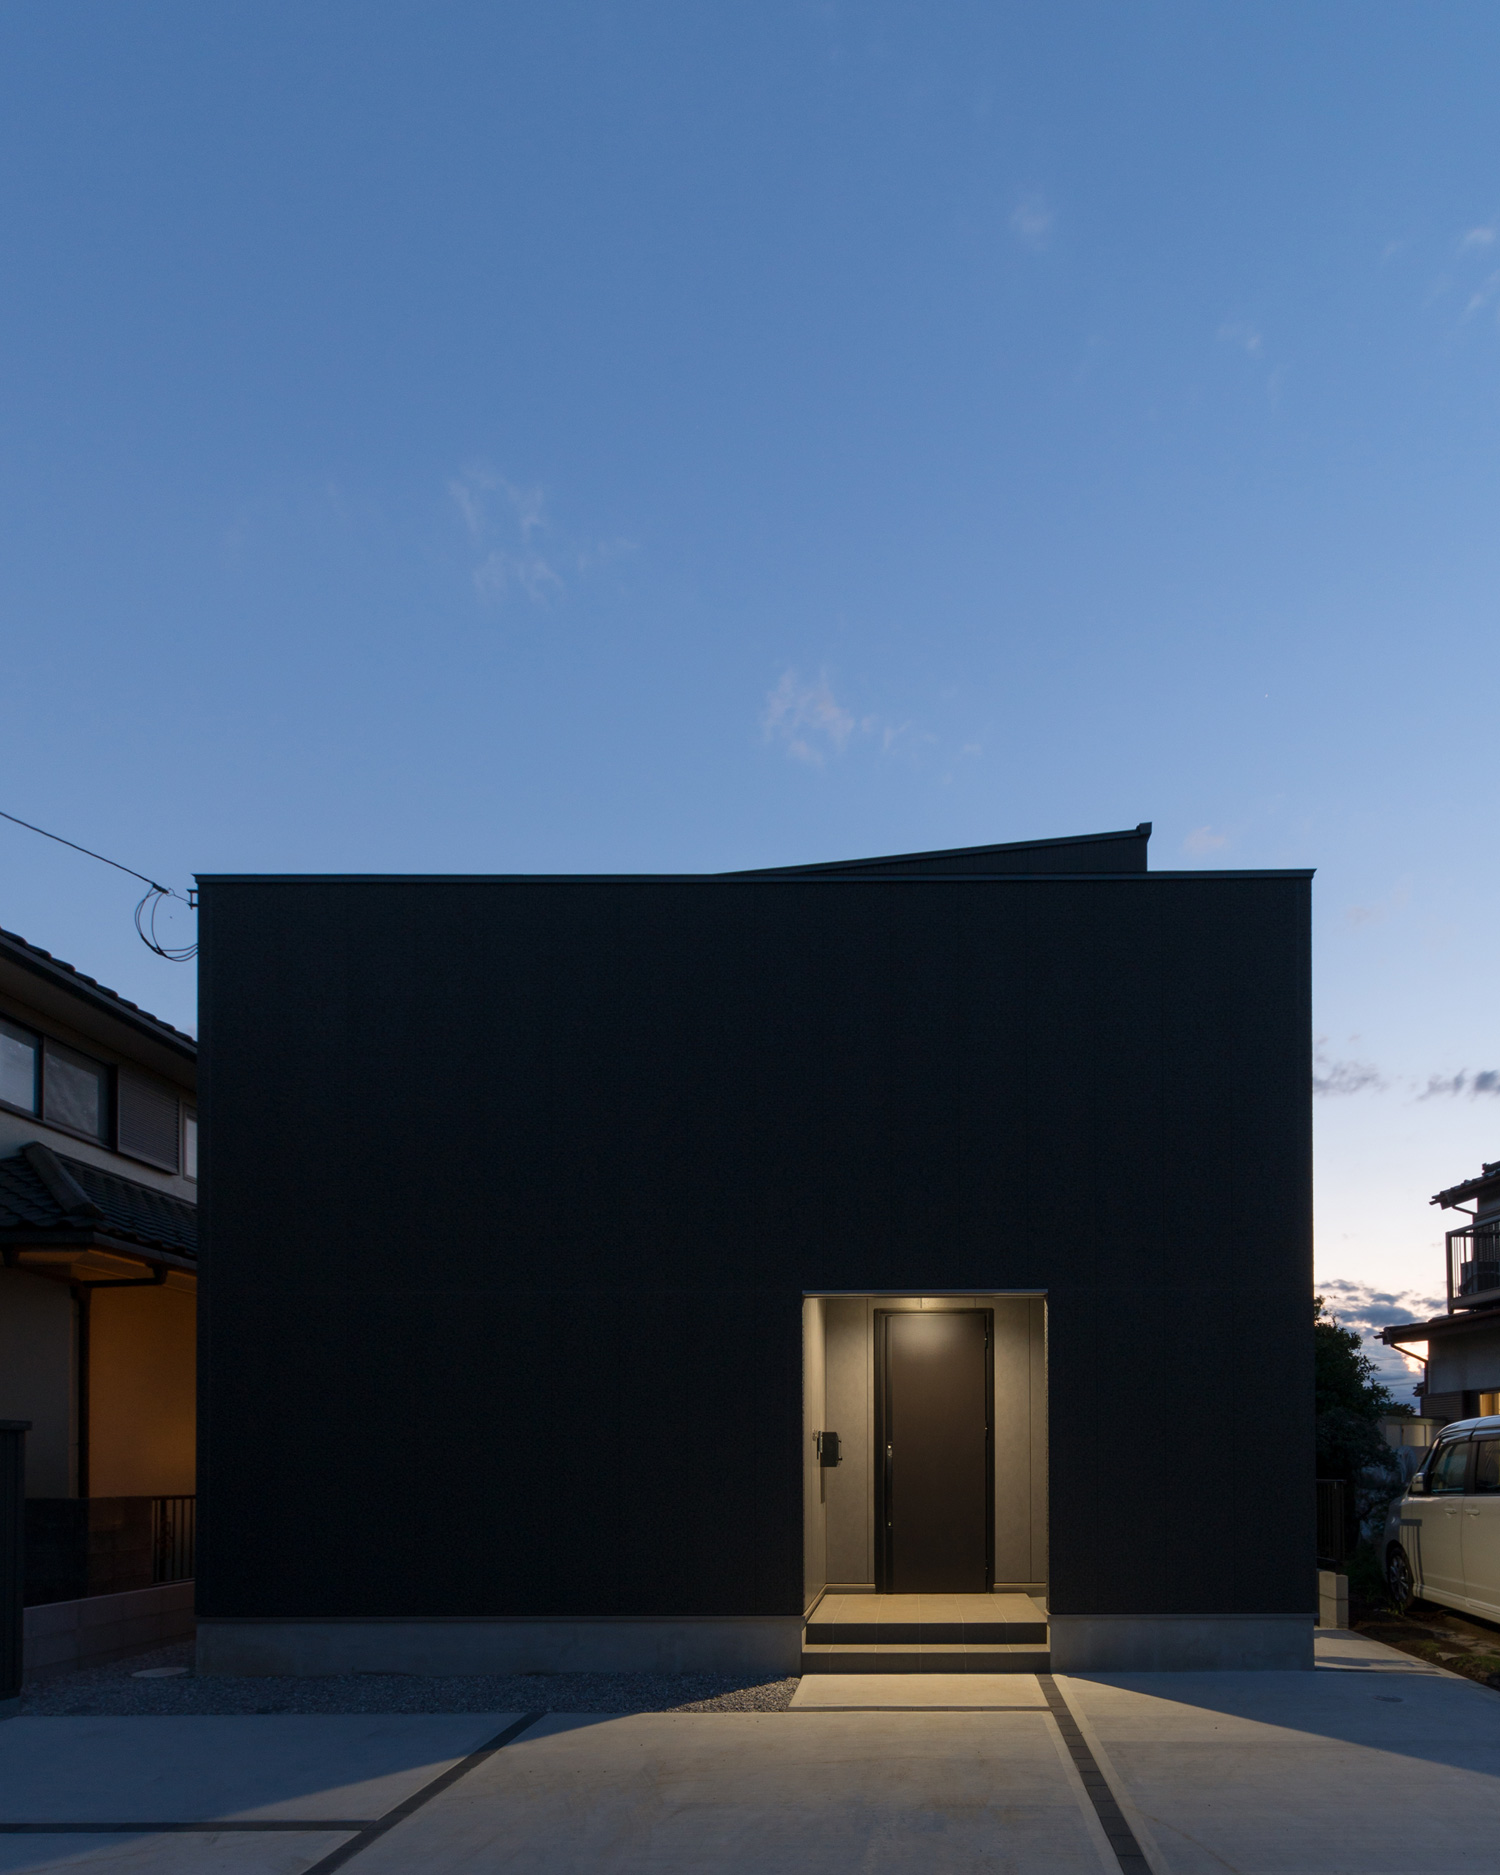 玄関が照明に照らされた黒いキューブ状の外観の住まい・デザイン住宅